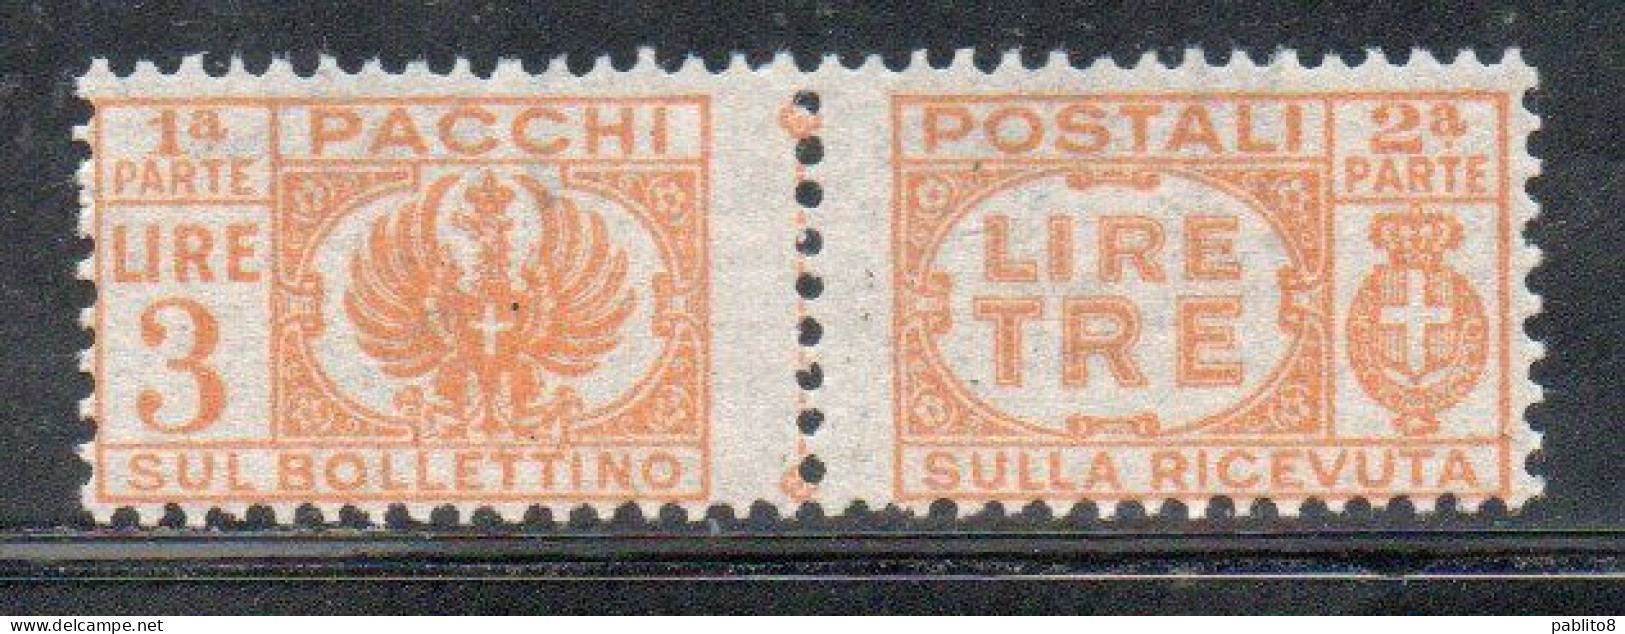 ITALIA REGNO ITALY KINGDOM 1946 LUOGOTENENZA PACCHI POSTALI SENZA FASCI PARCEL POST LIRE 3 MNH - Paquetes Postales